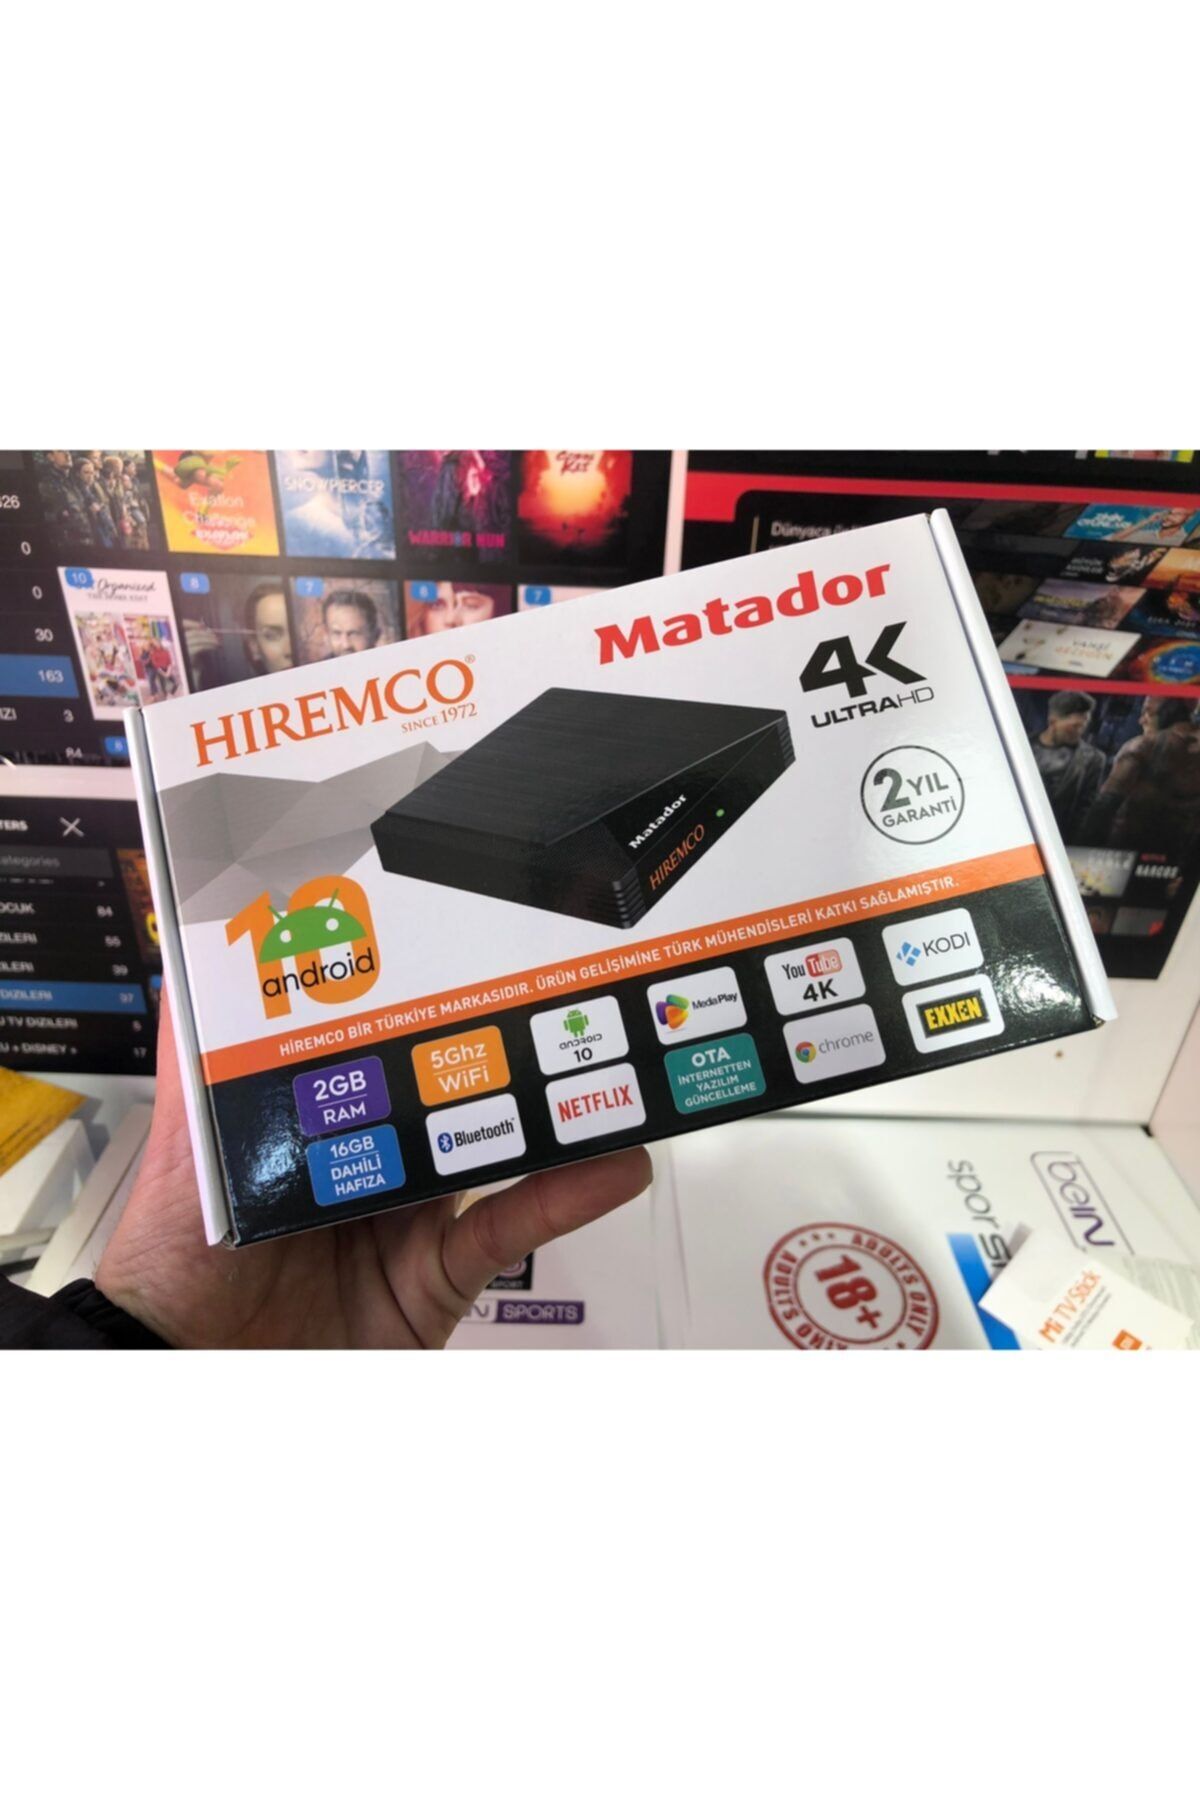 Hiremco Android Tv Box 4k - Android Box - 4k Smart Box MATADOR UHD / 4K